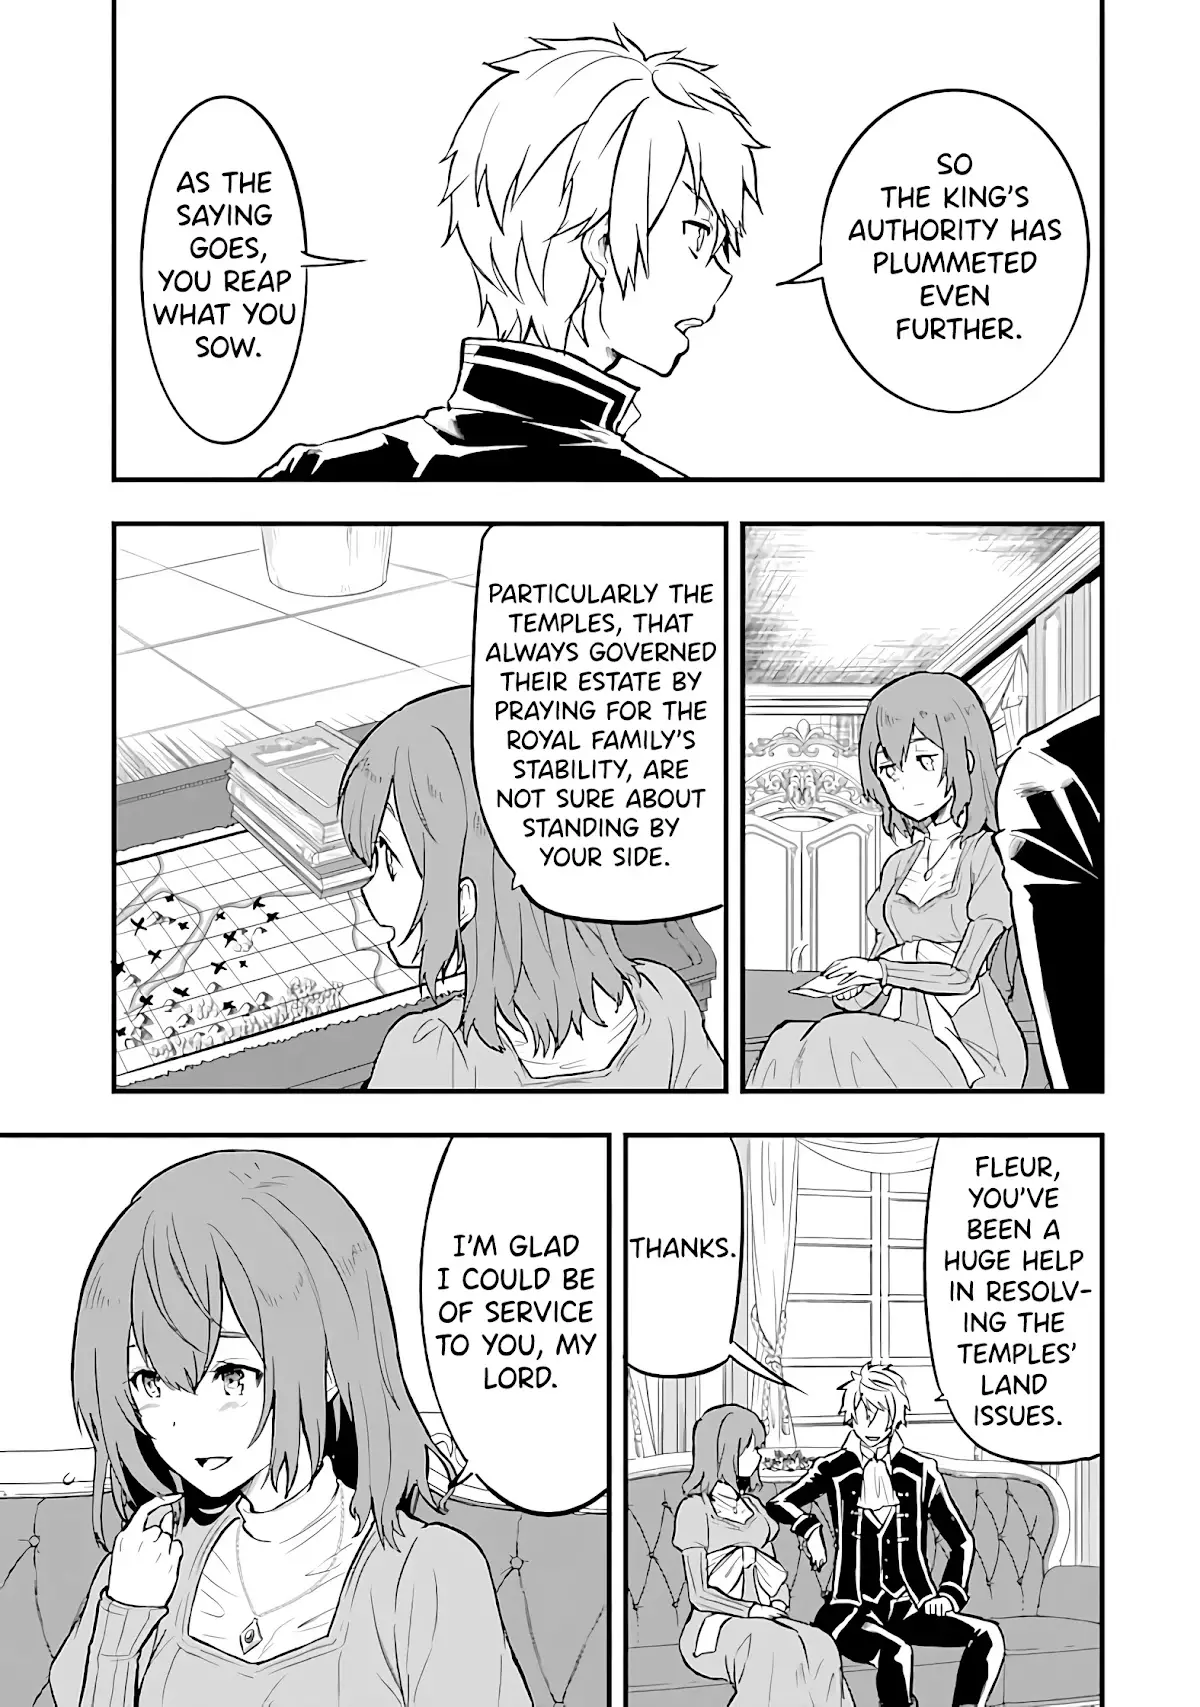 Mysterious Job Called Oda Nobunaga - 18 page 3-897cf7c5